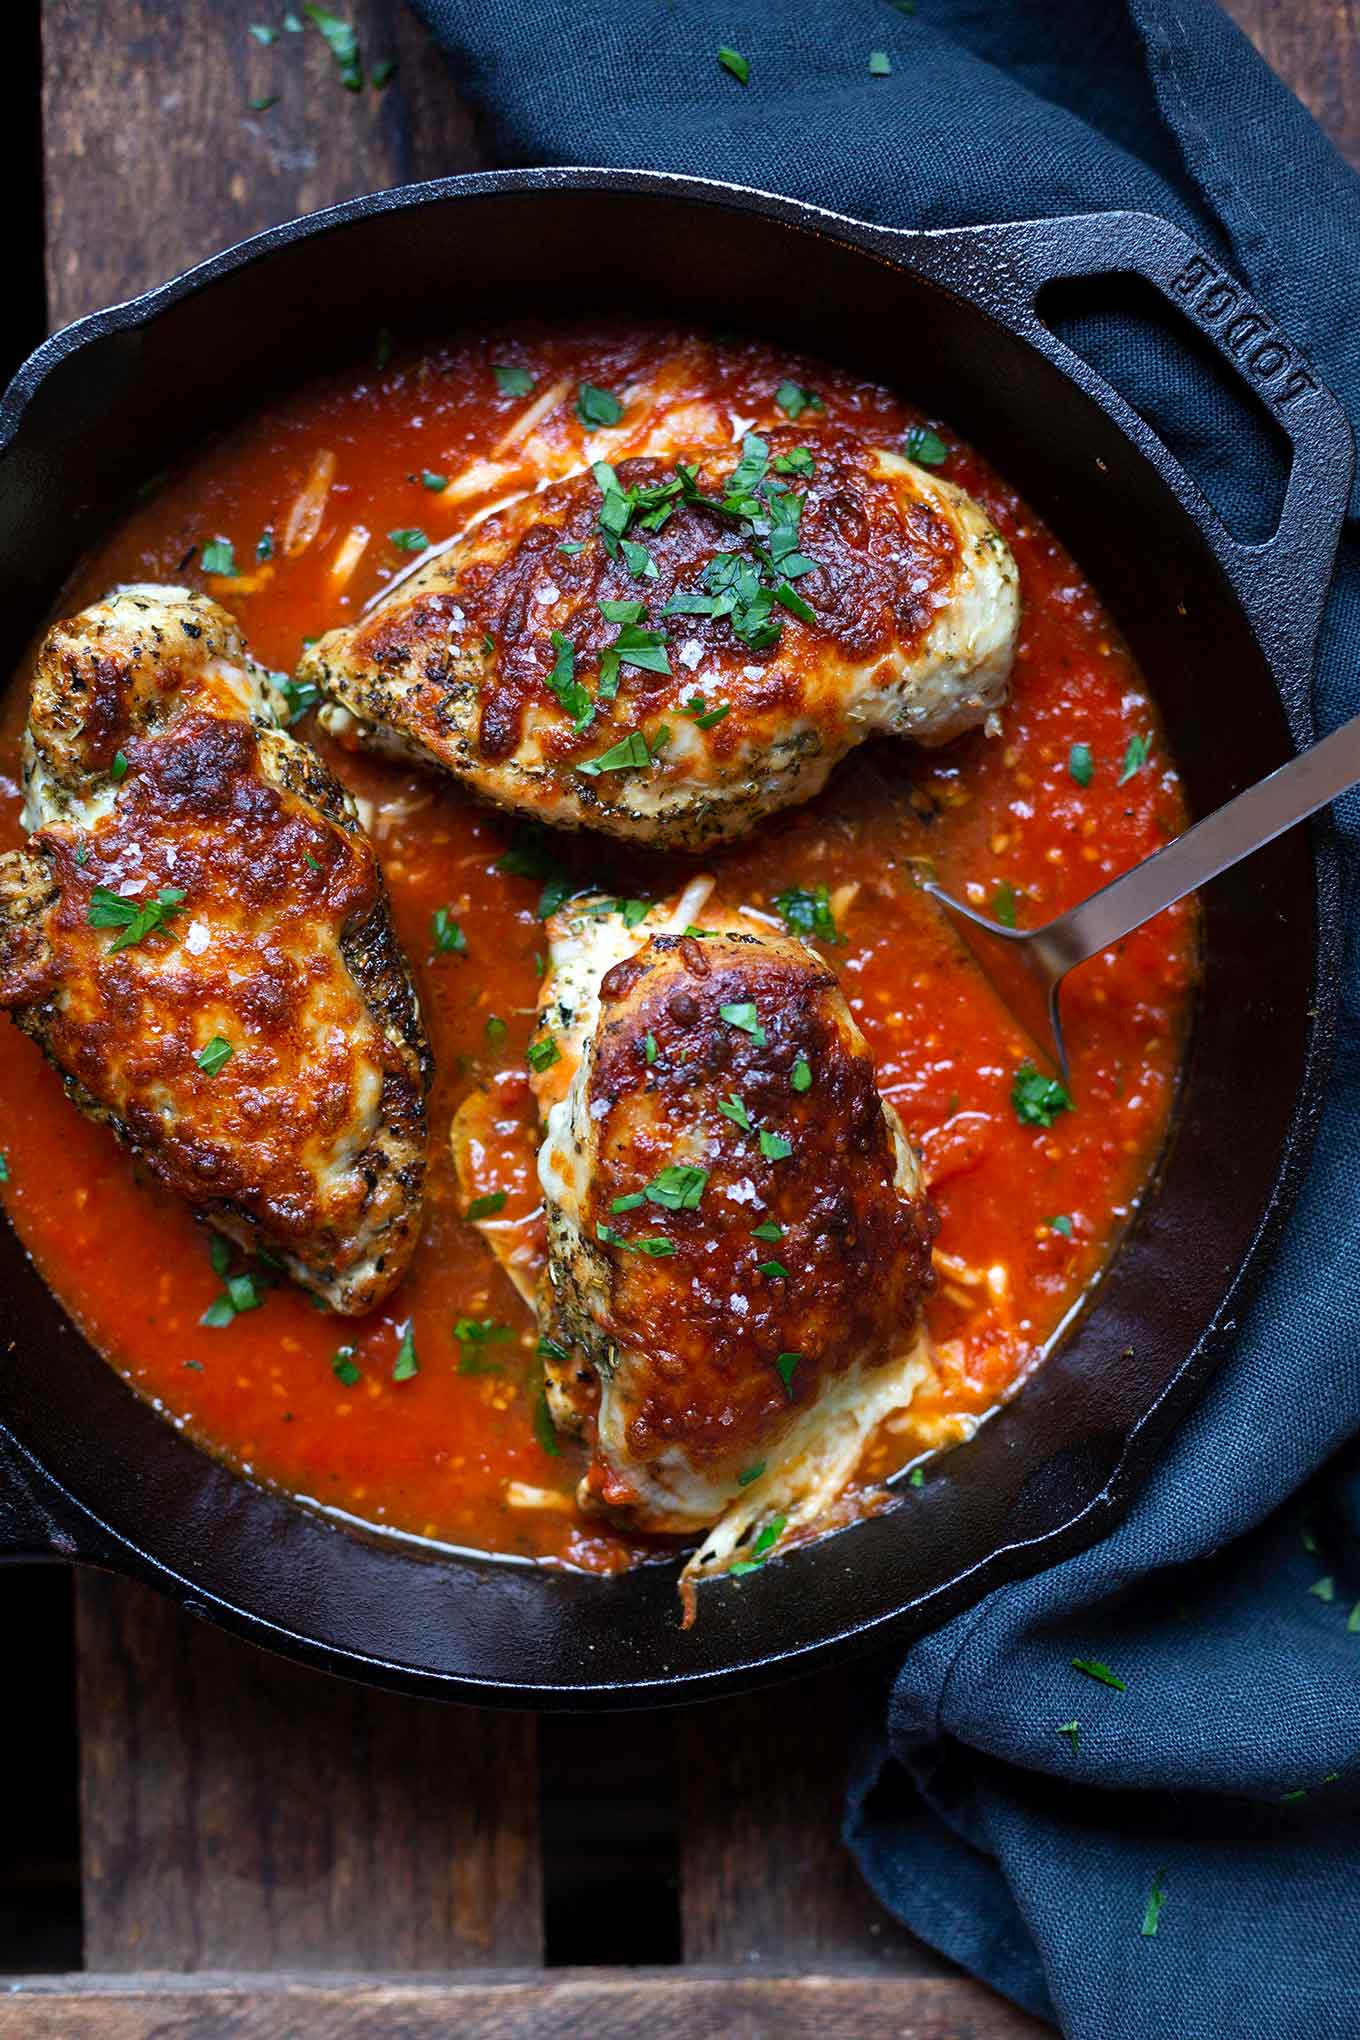 Saftiges Mozzarella-Hähnchen in Tomatensauce. Dieses schnelle 6-Zutaten Rezept ist low carb, herzhaft und getoppt mit einer dicken Käsekruste! - Kochkarussell Foodblog - #mozzarellahähnchen #hähnchen #rezept #lowcarb